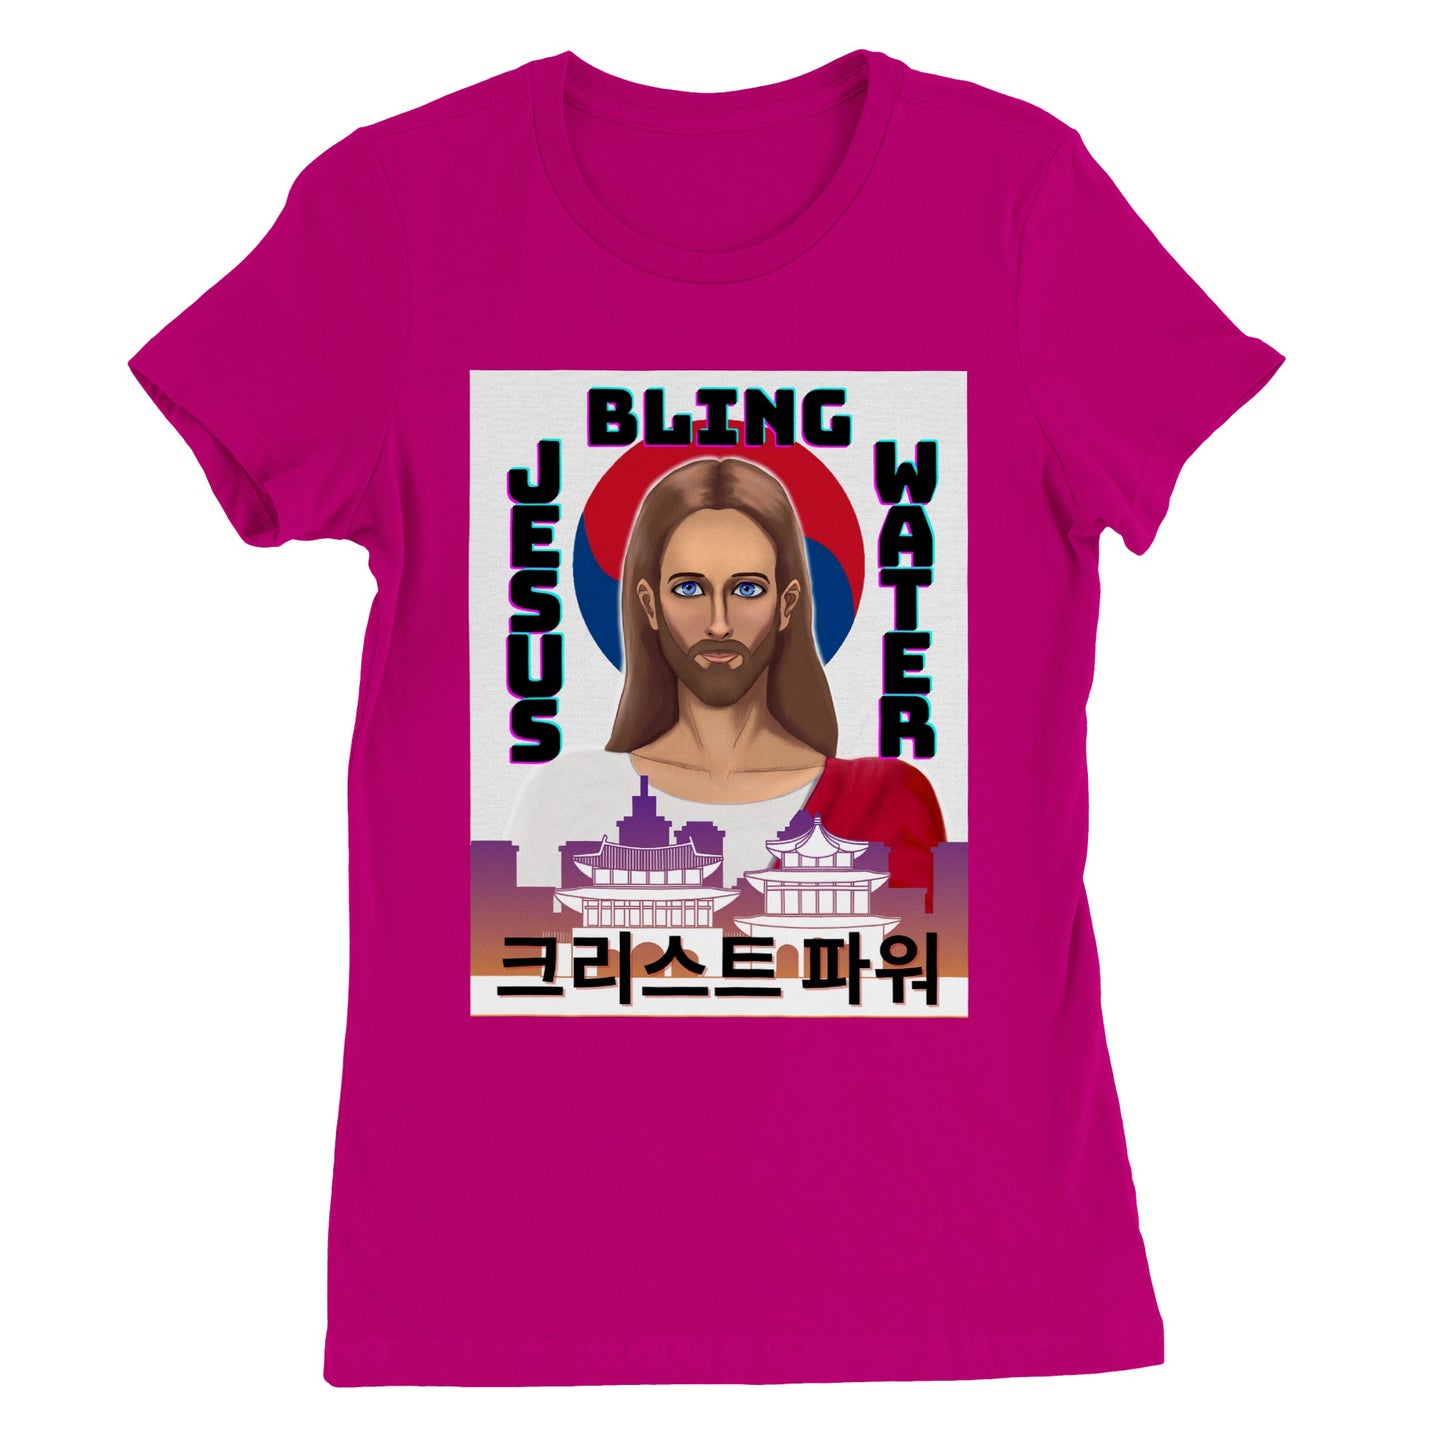 "Christ Power" South Korea Women's T-Shirt